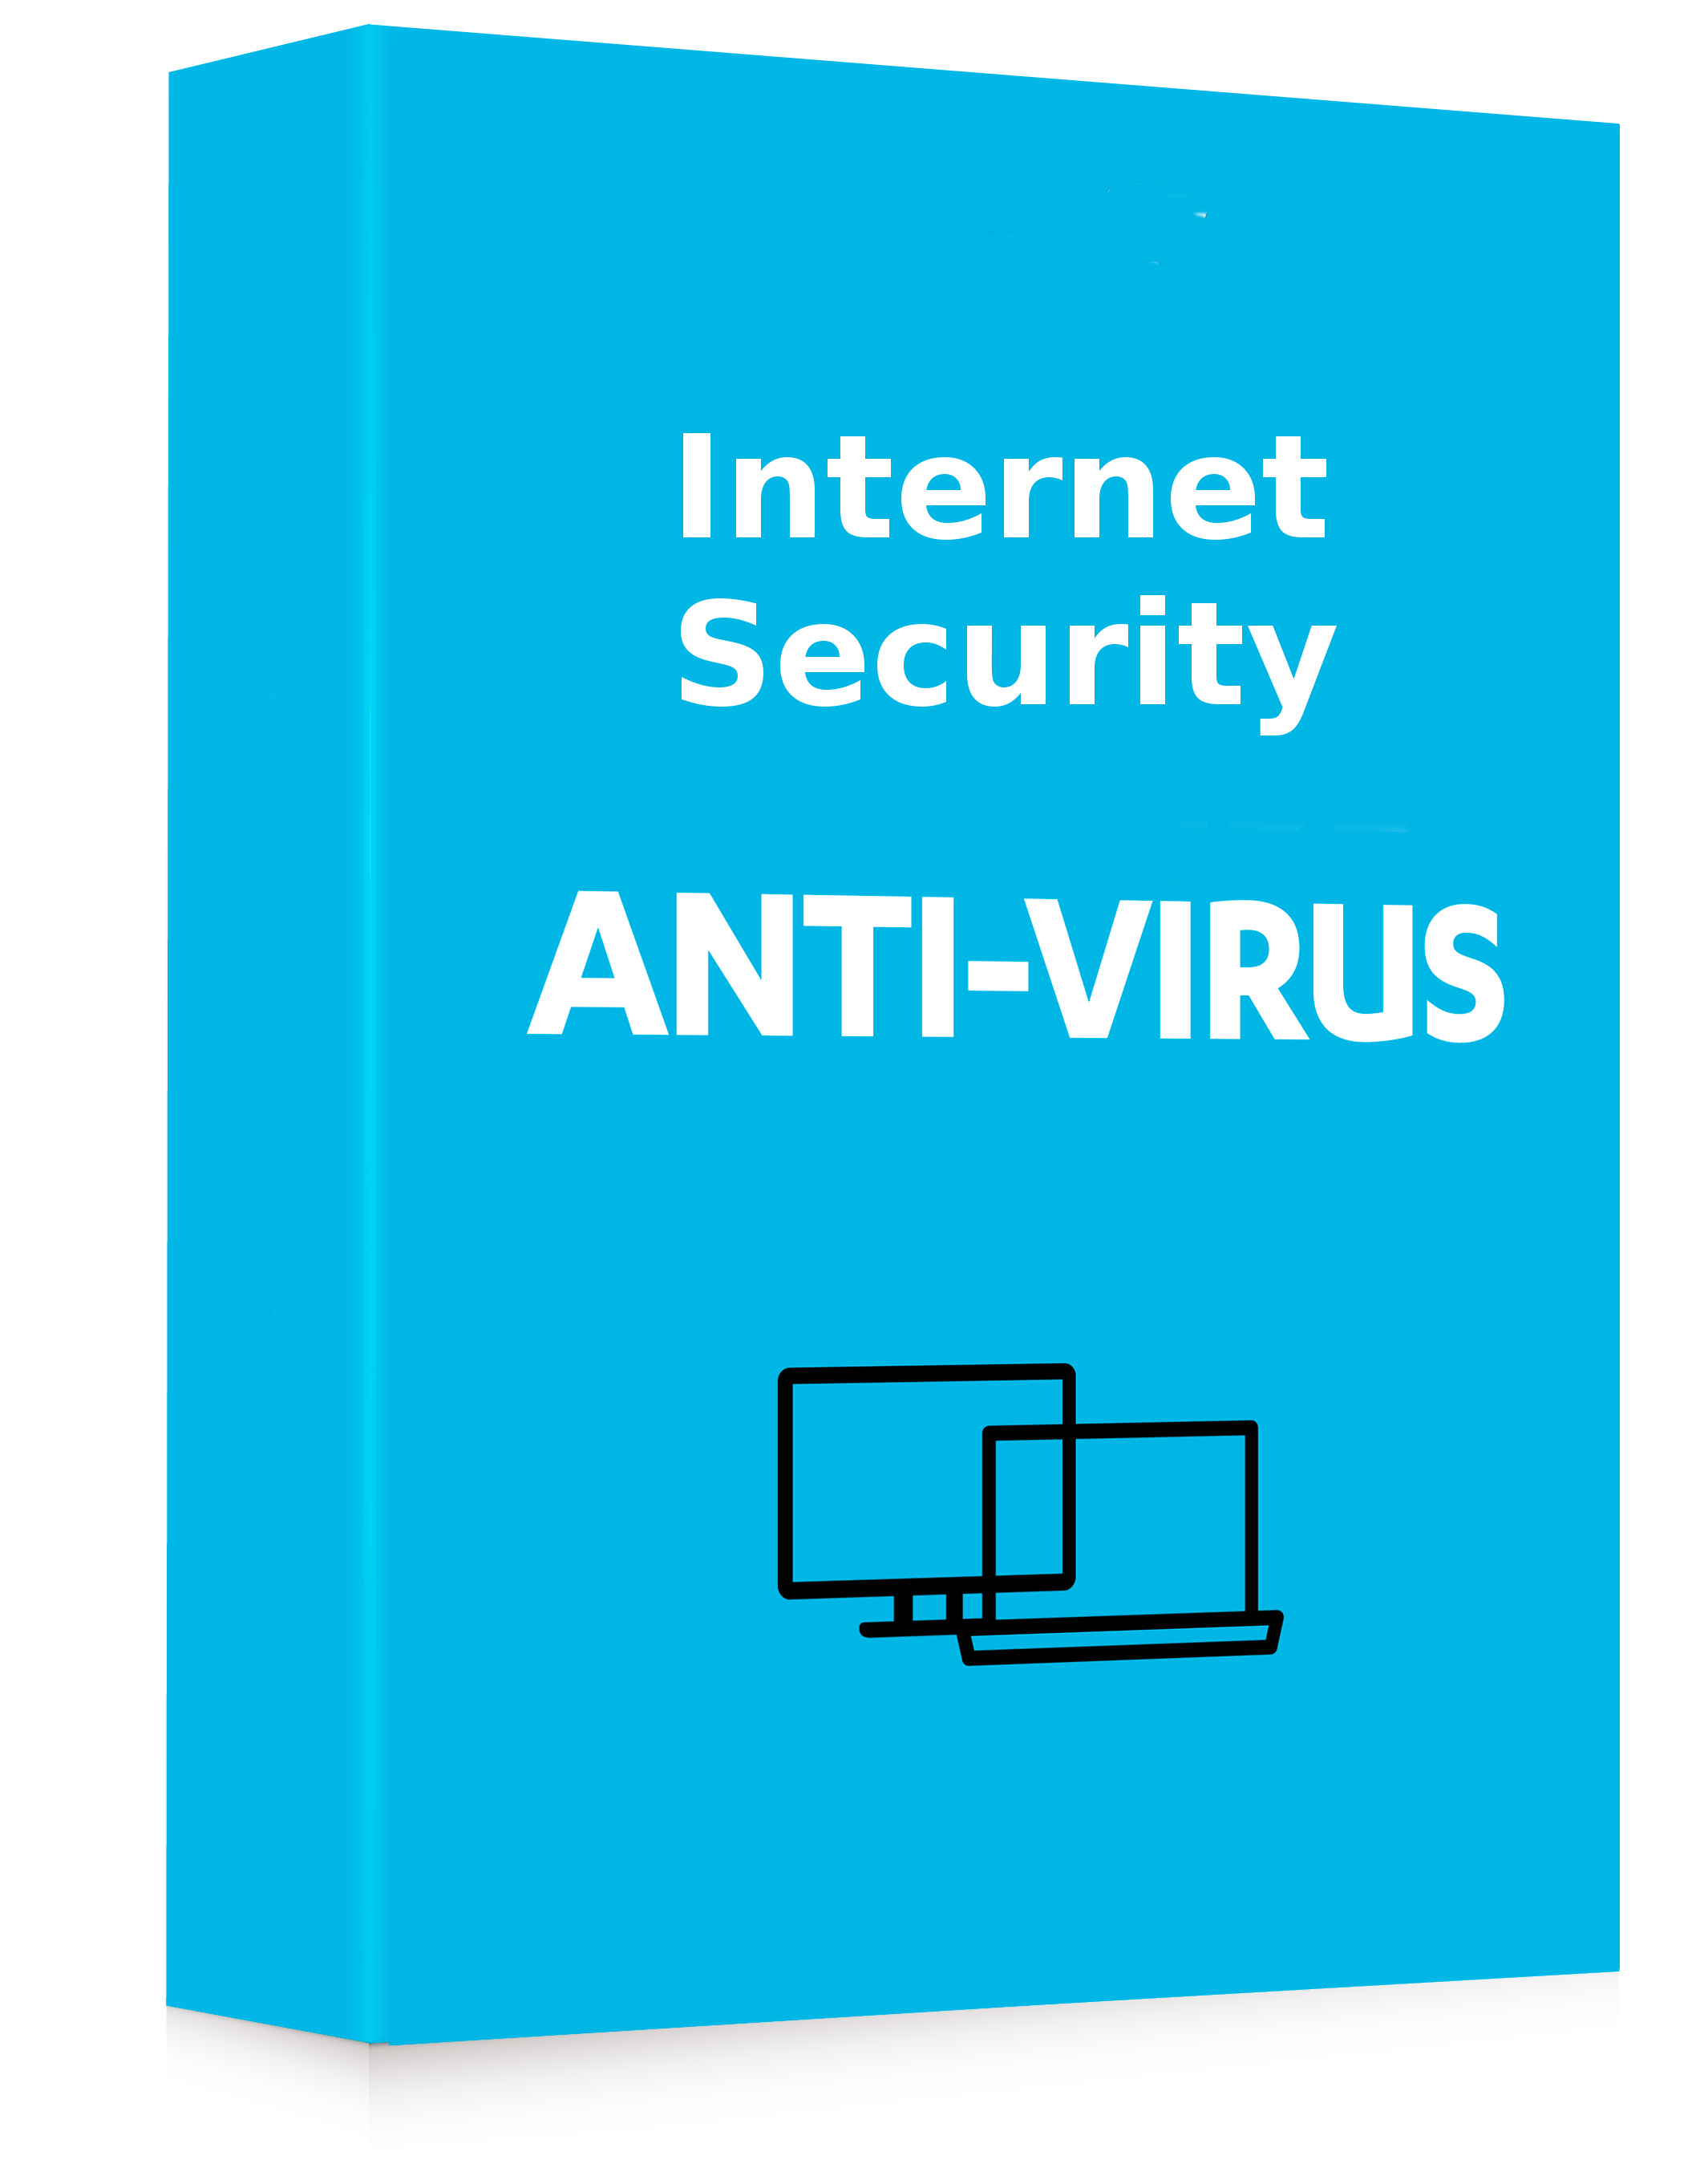 Antivirus & Security